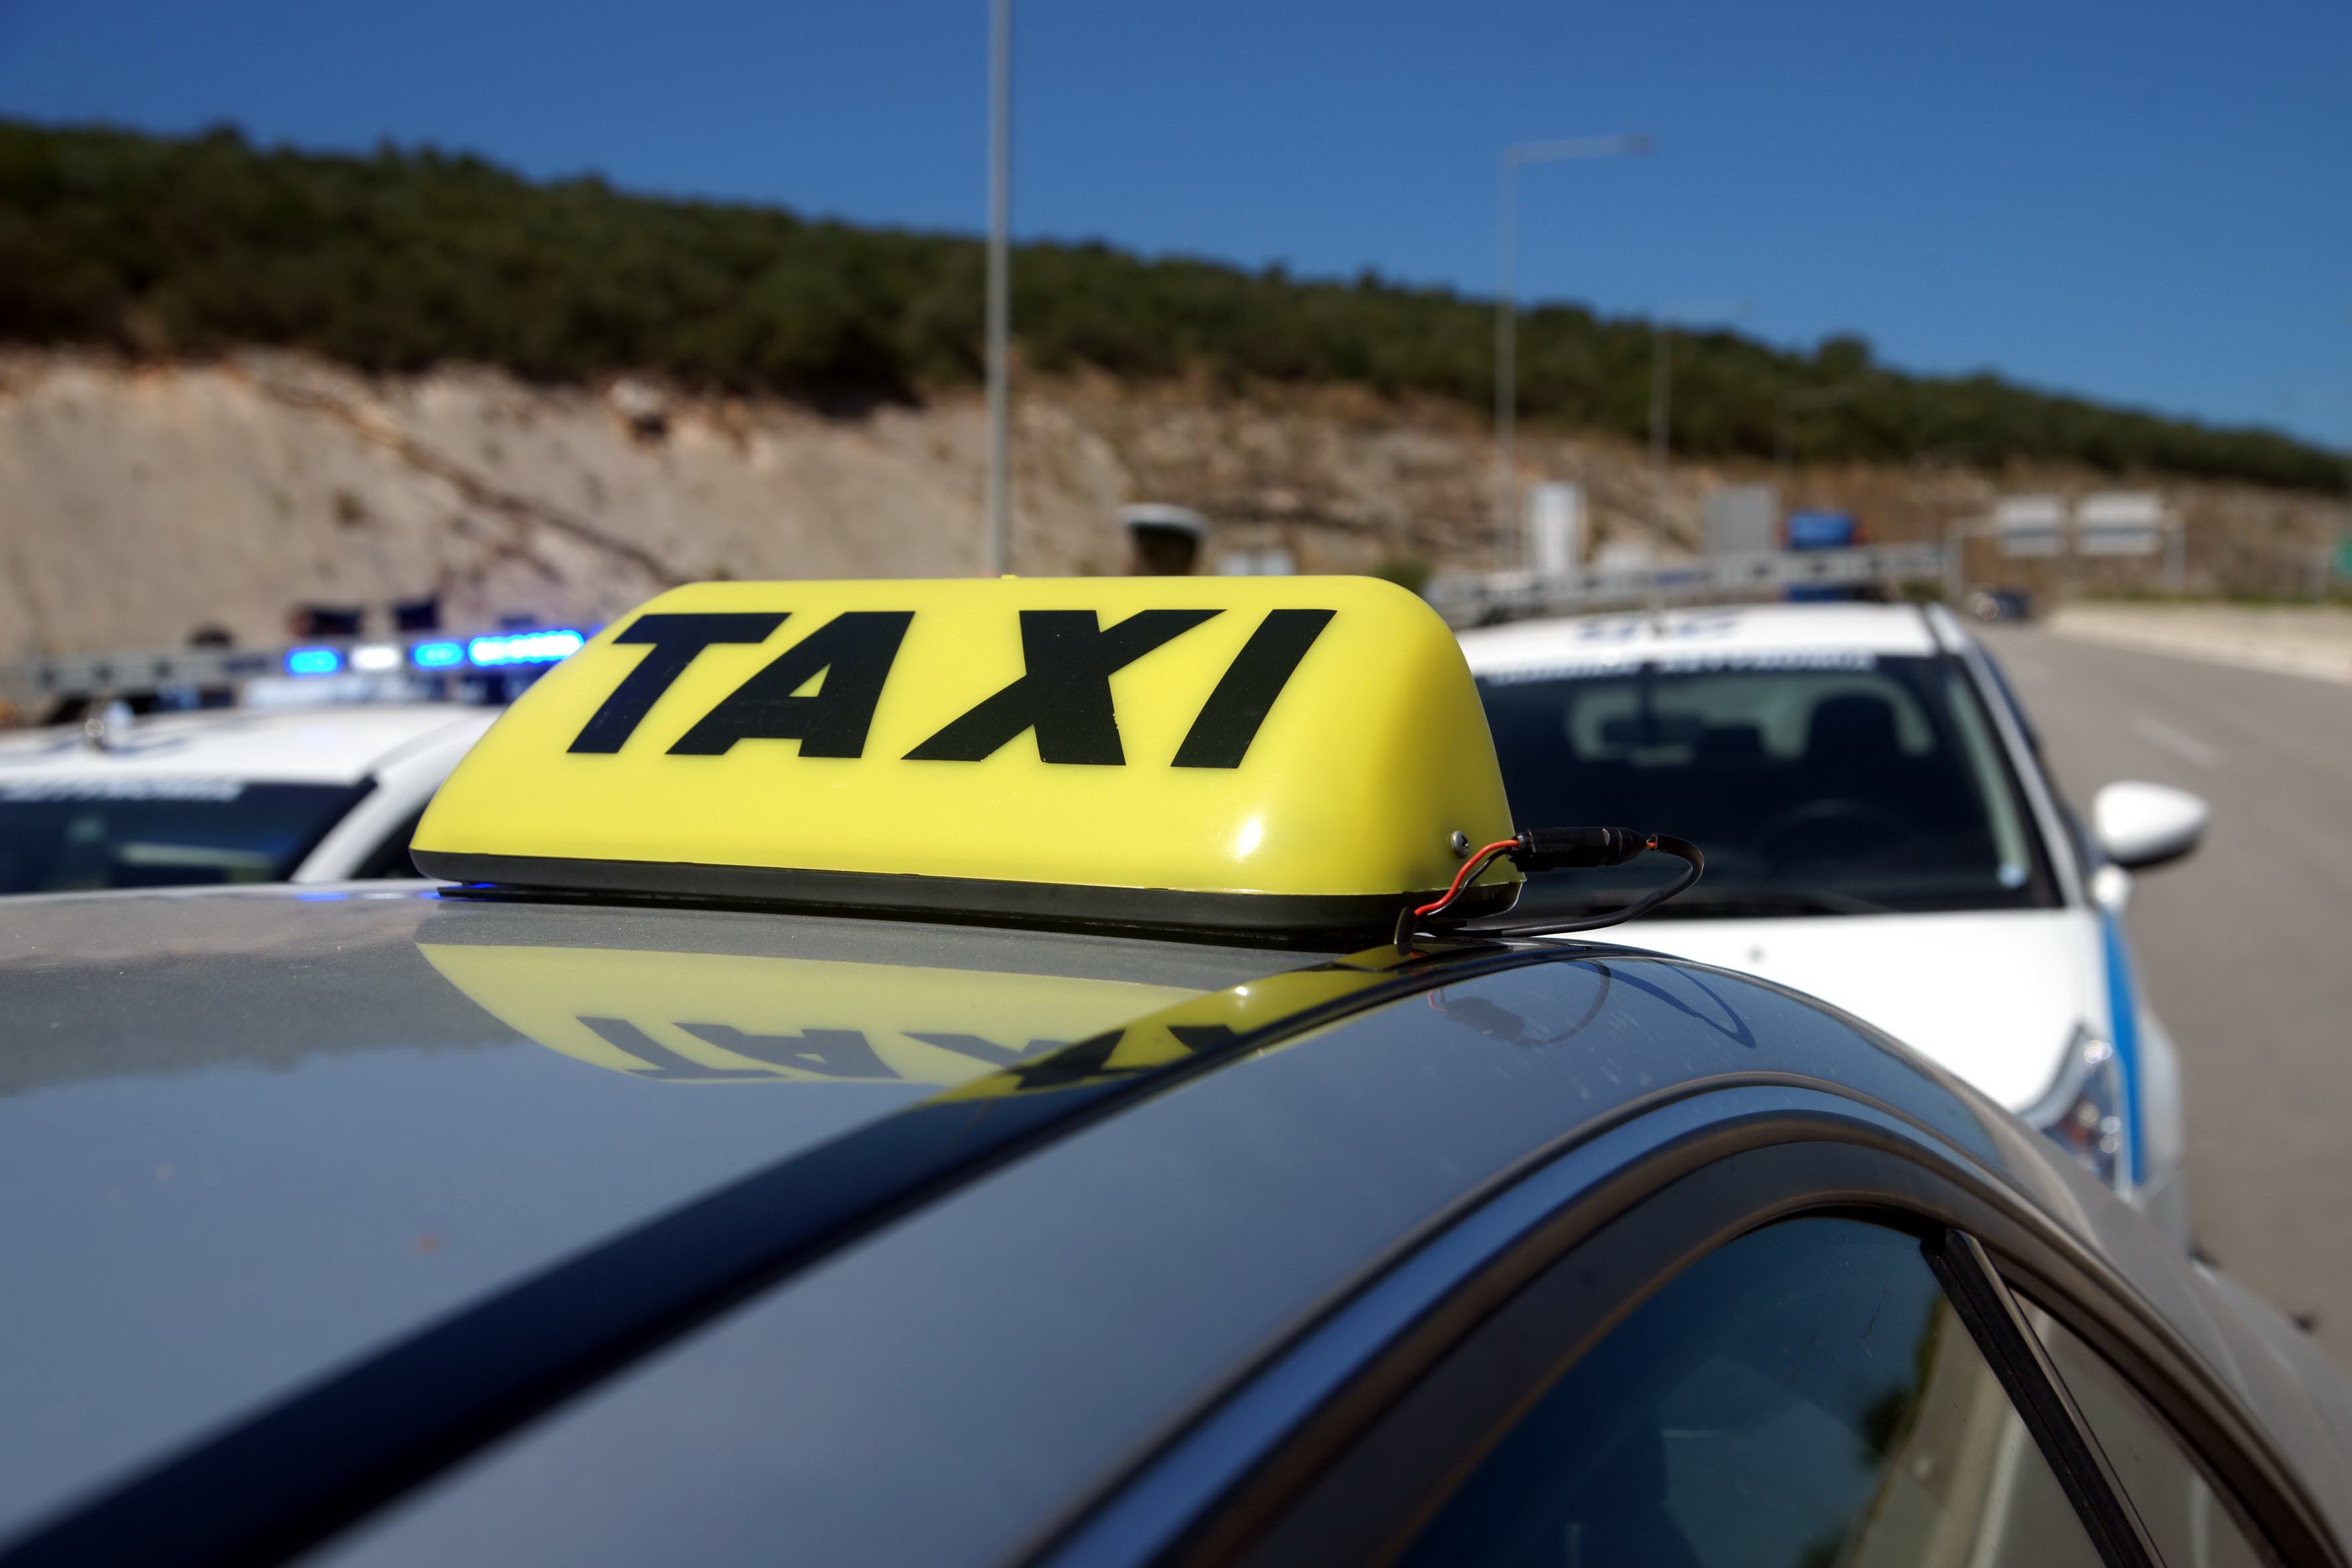 ΚΥΠΡΟΣ: Πρόστιμα ύψους πάνω των 10 χιλιάδων ευρώ επιβλήθηκαν σε οδηγούς ταξί - Η πιο συχνή παράβαση αφορά την μη χρήση ταξίμετρου